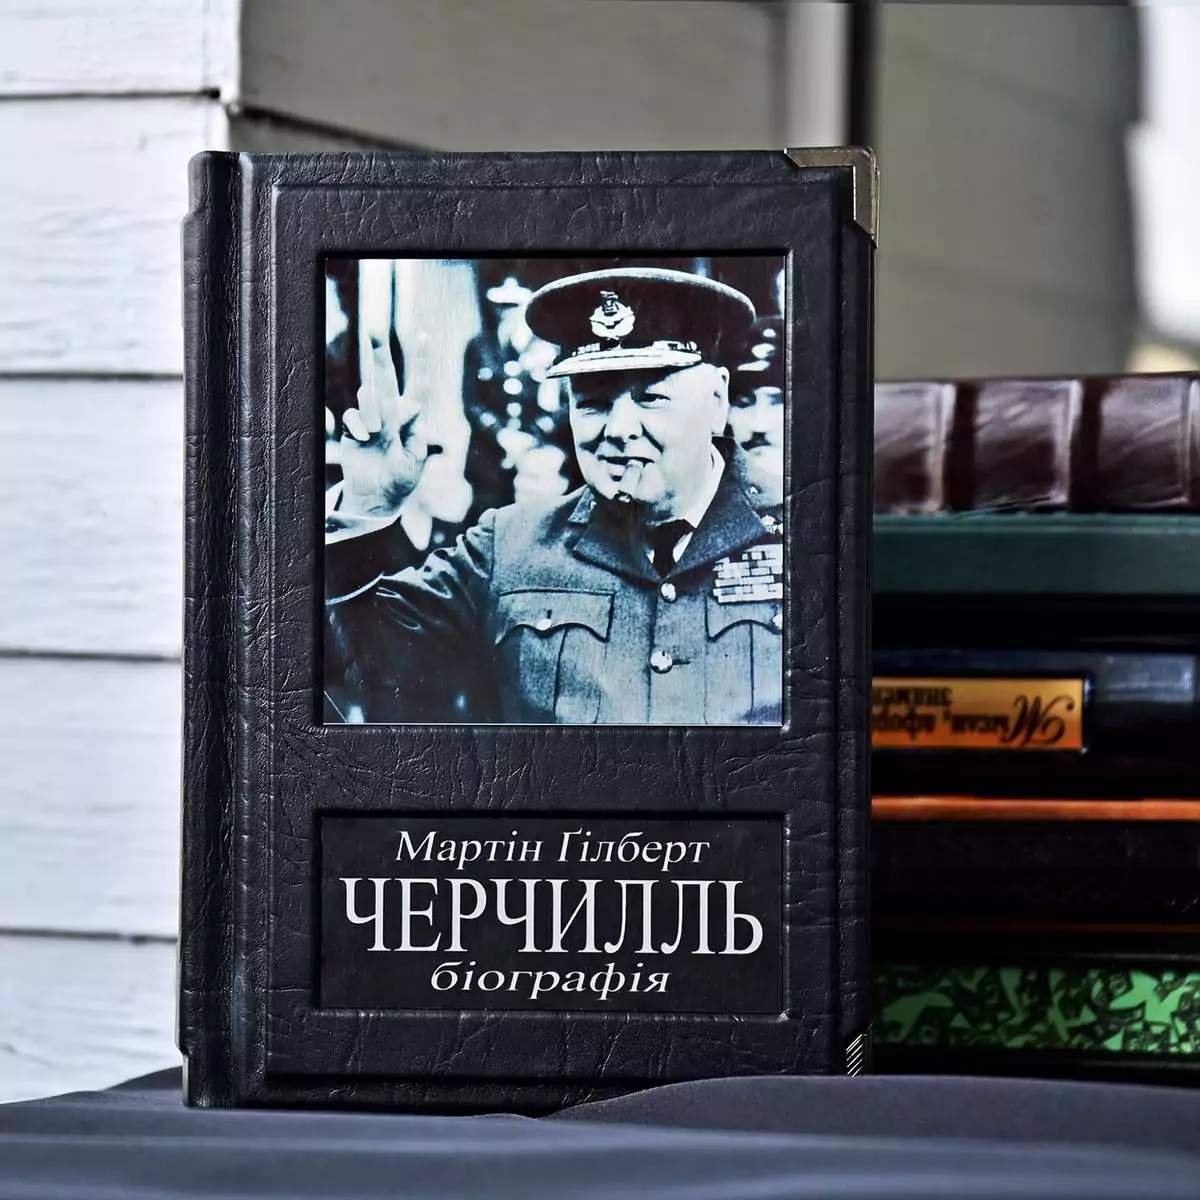 Книга "Черчилль: биография", Мартин Гилберт (на украинском языке)